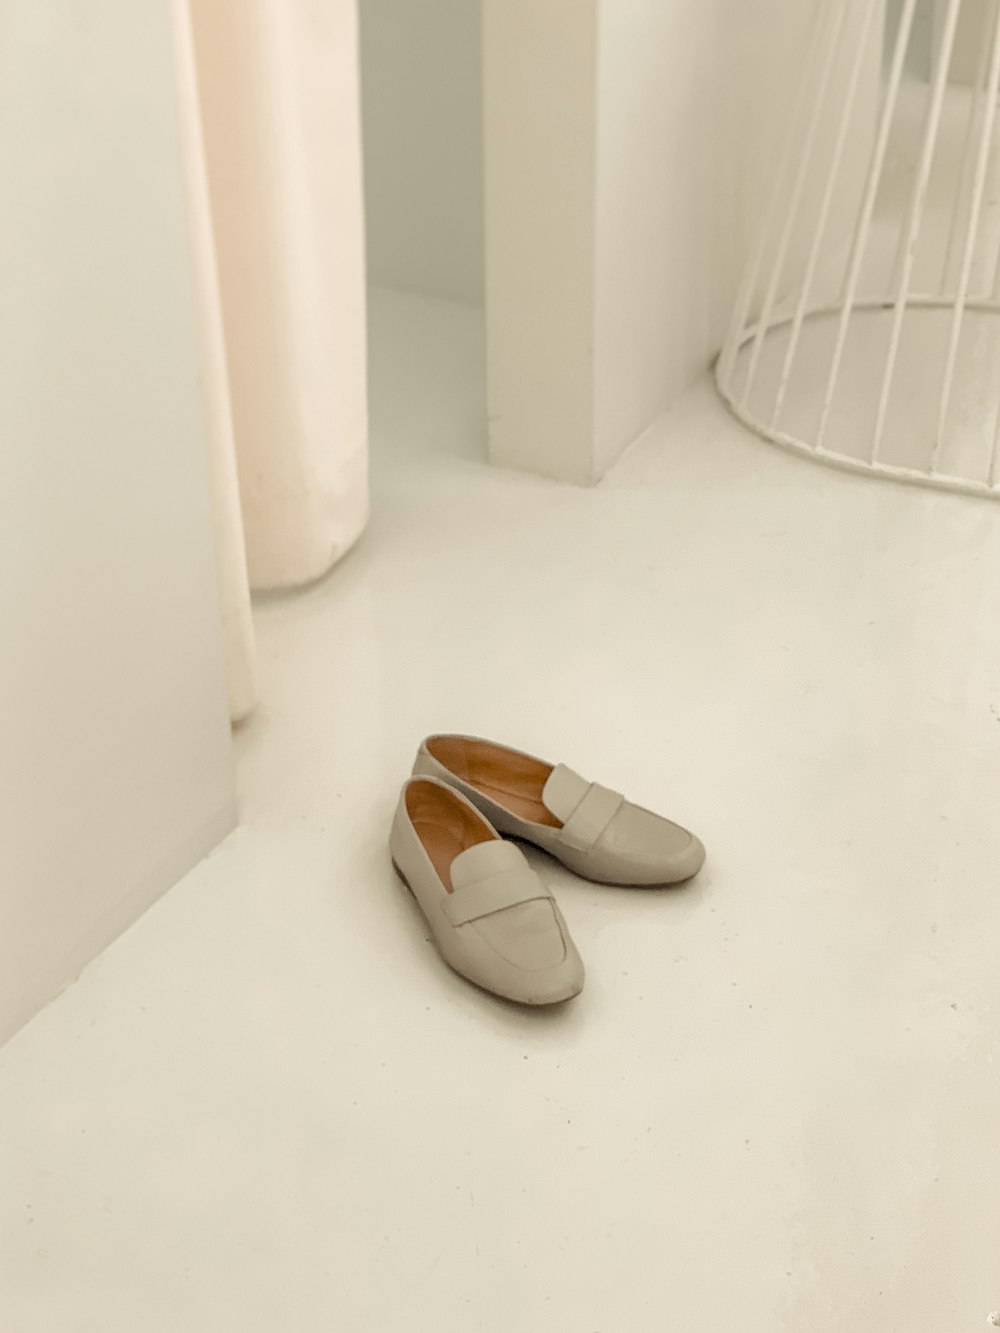 zapatos grises en una habitaciónfotografía de primer plano